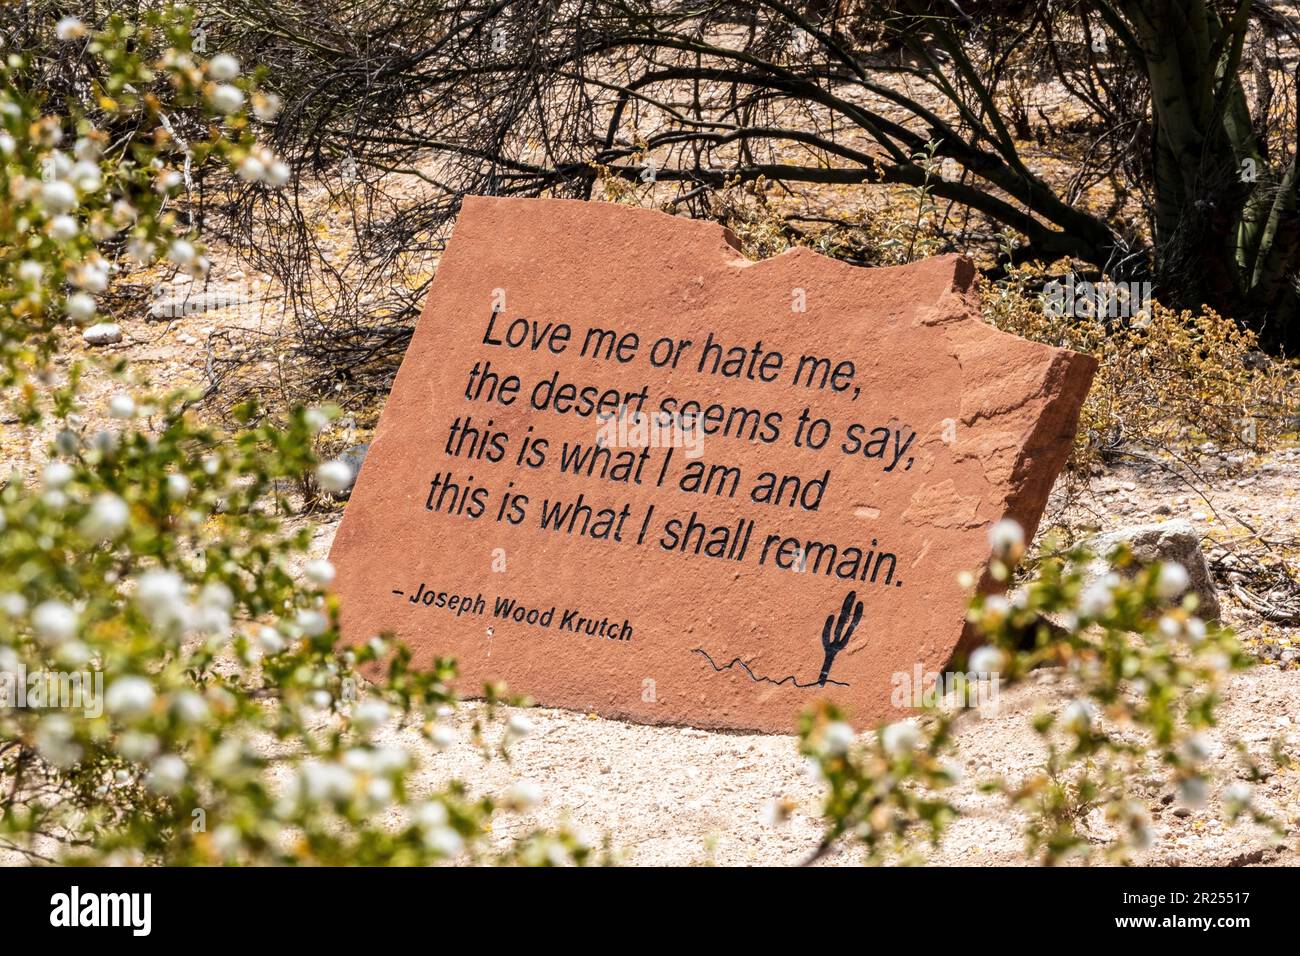 Citazione di Joseph Wood Krutch sul deserto, 'mi ama o odio, il deserto sembra dire, questo è ciò che sono e questo ciò che resterò.' Foto Stock